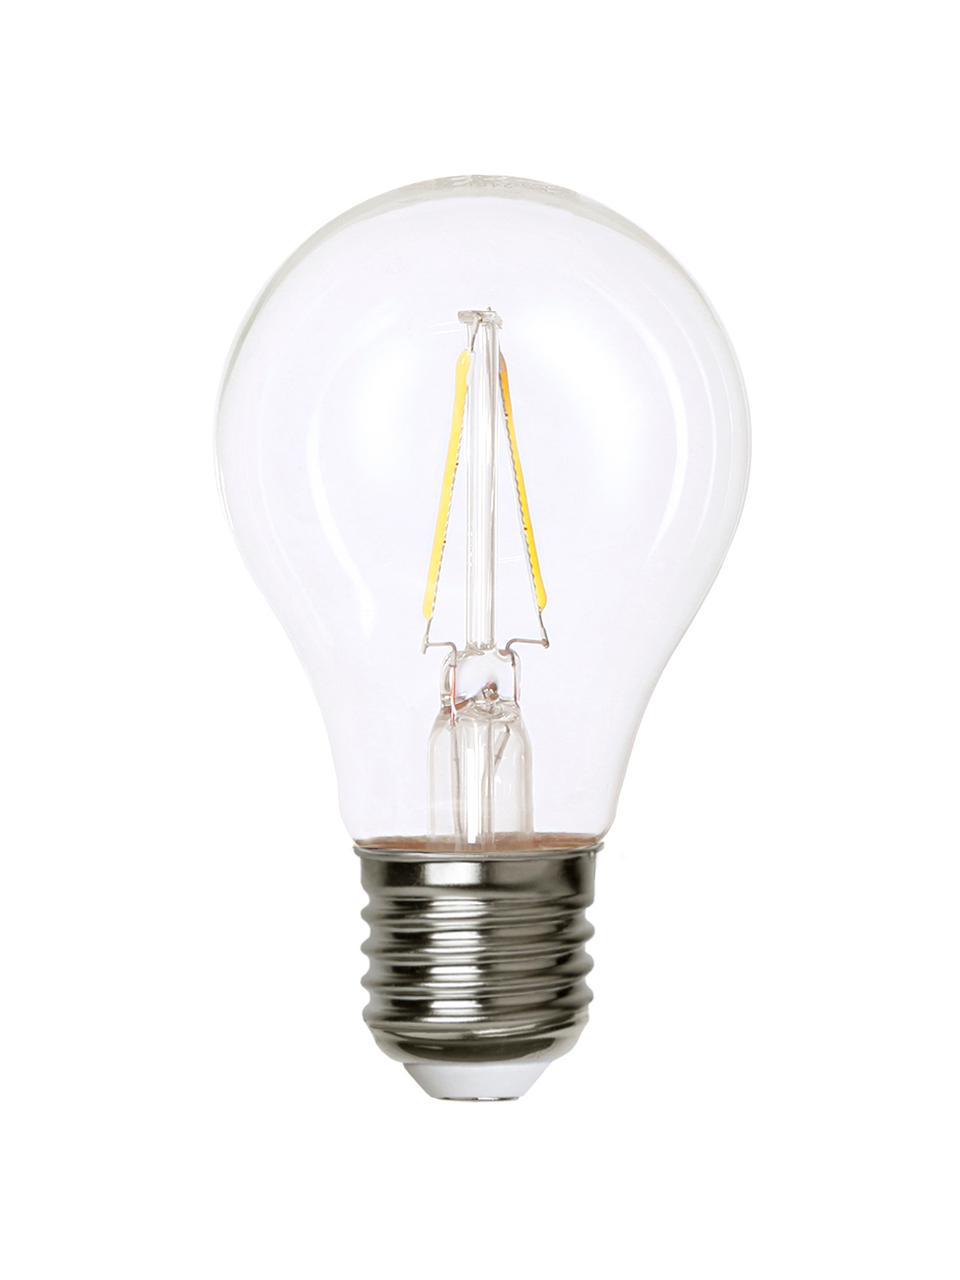 Ampoule (E27 - 2 W) blanc chaud, 1 pièce, Transparent, nickel